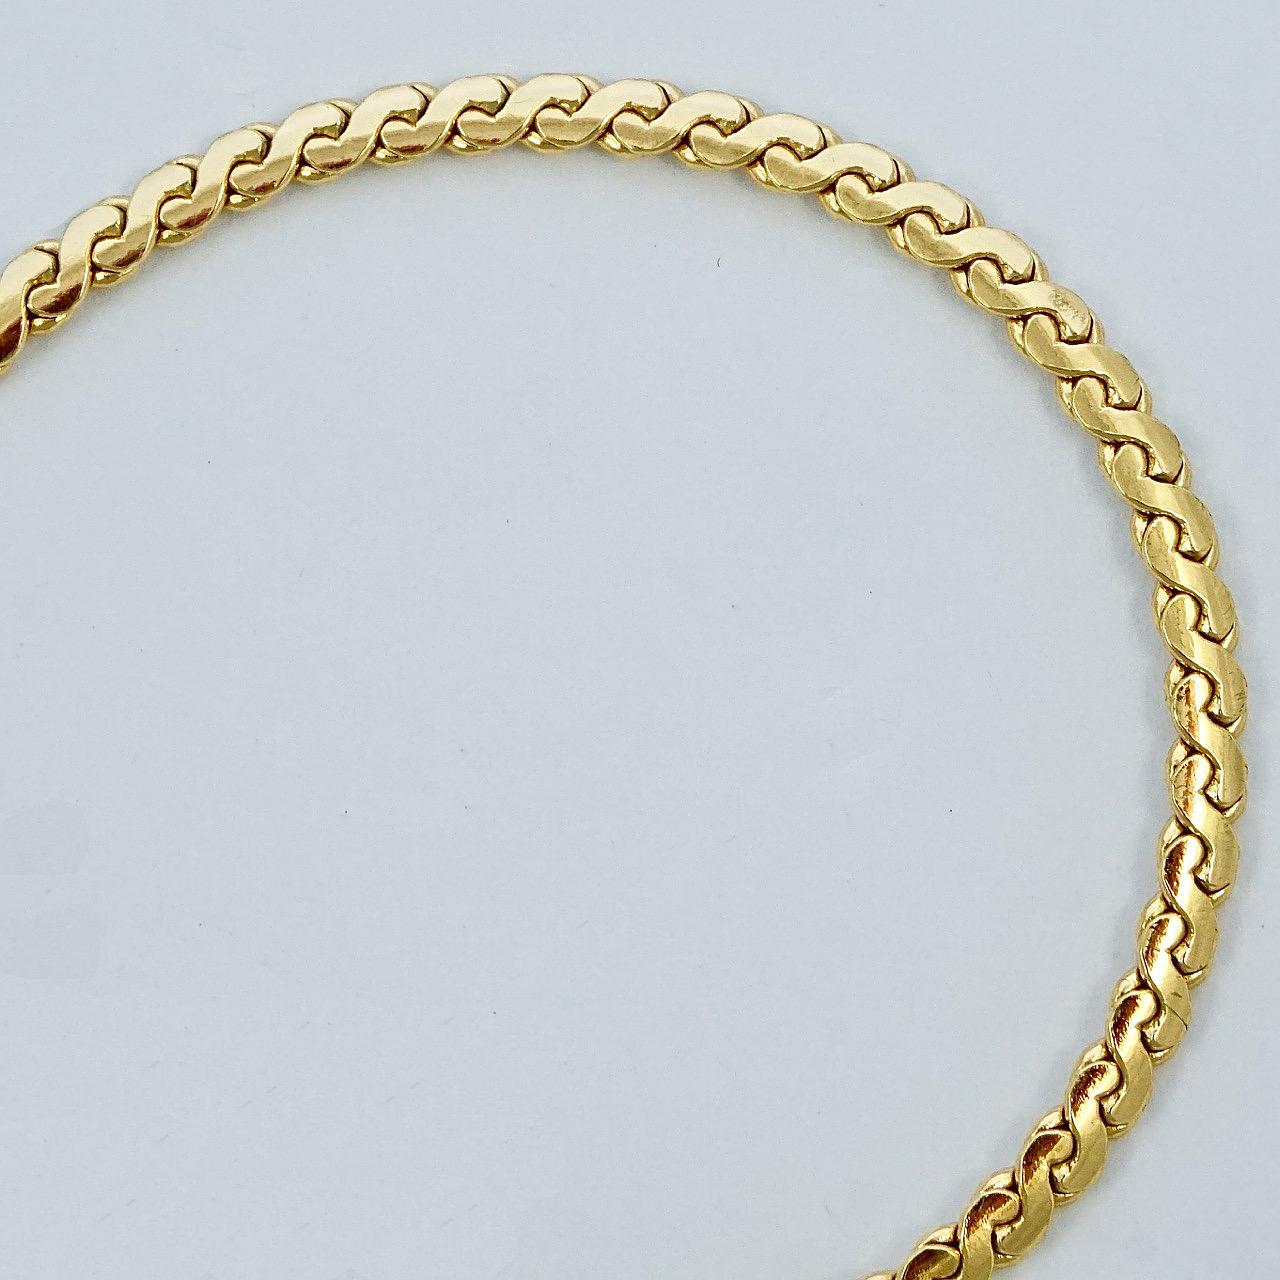 Grossé Germany vergoldete Kette im Serpentinen-Design. Messlänge 81,5 cm / 32 Zoll bei einer Breite von 3 mm / .1 Zoll. Die Halskette ist in sehr gutem Zustand. Wir haben den Federbolzen-Verschluss durch einen neuen ersetzt.

Dies ist eine schöne